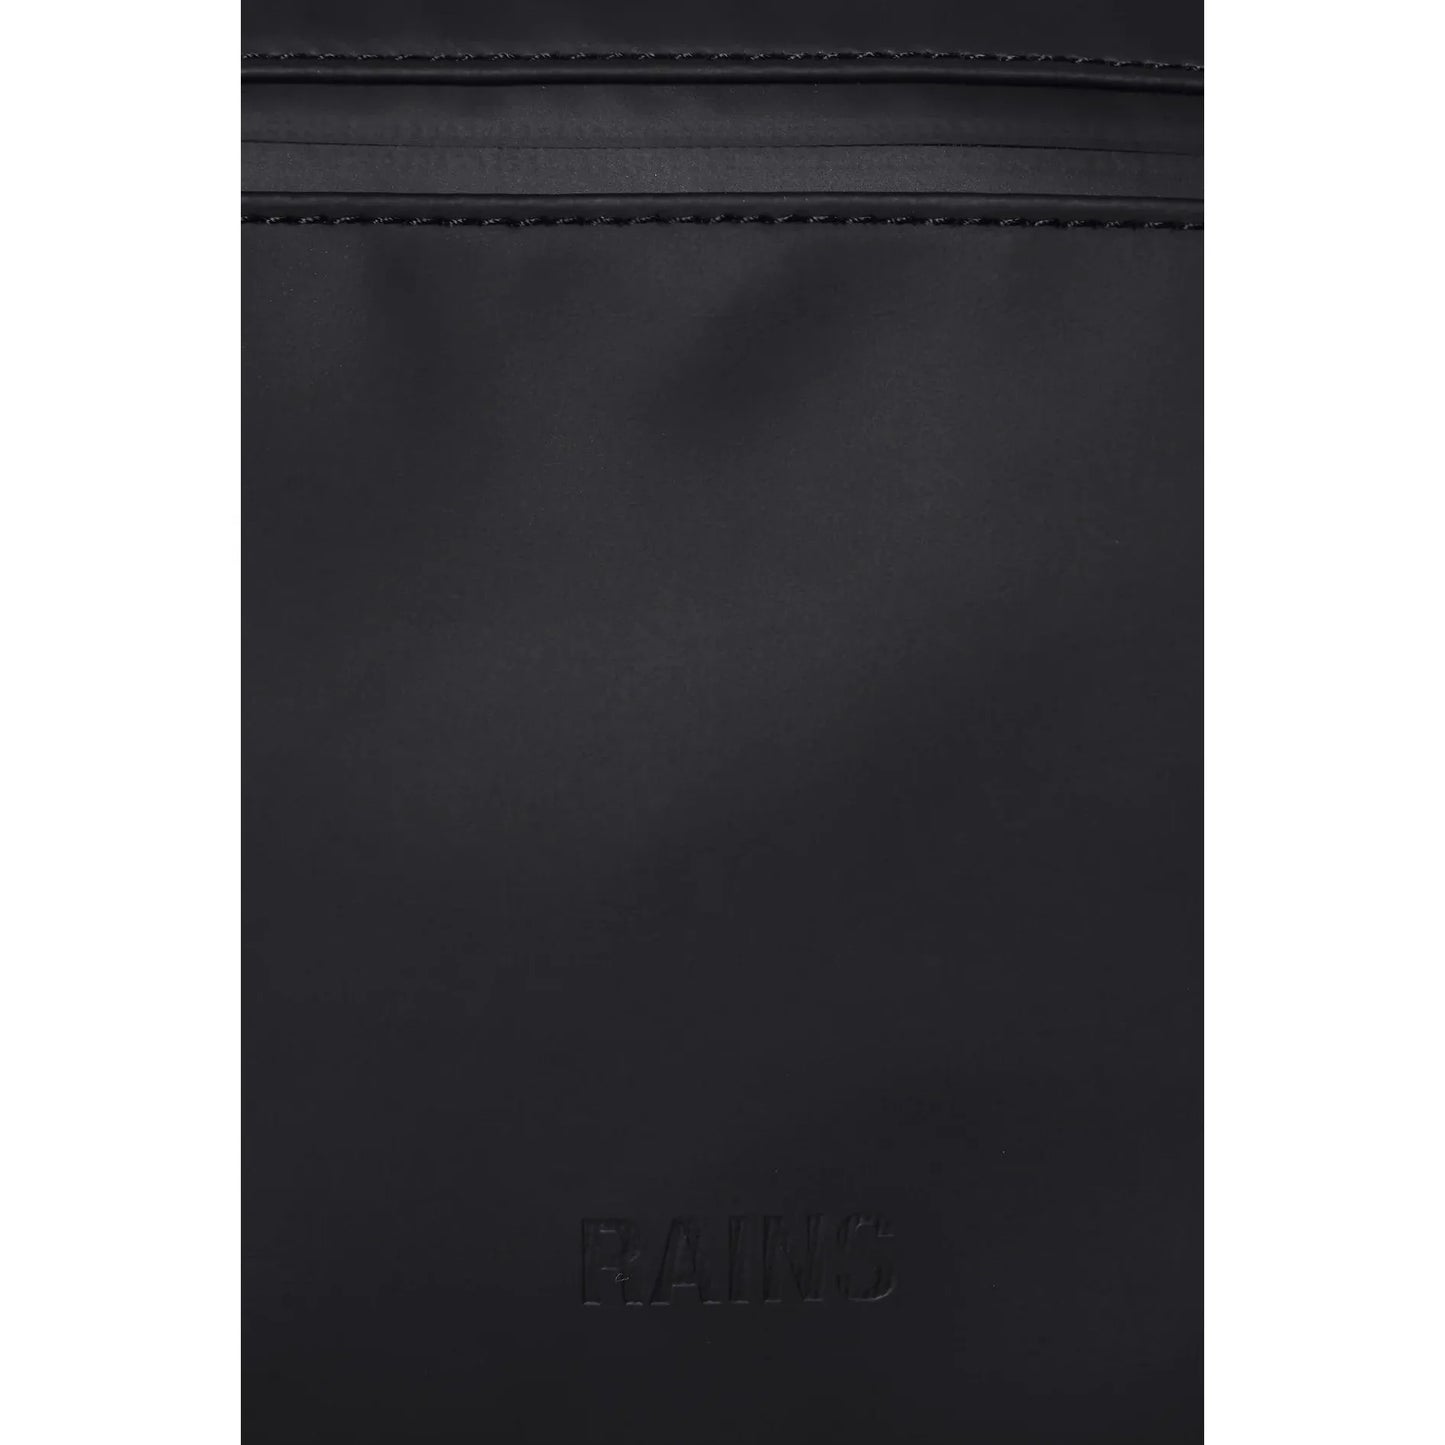 RAINS Bags H6.3 x W14.4 x D2 inches / Black / Polyester RAINS Bum Bag W3